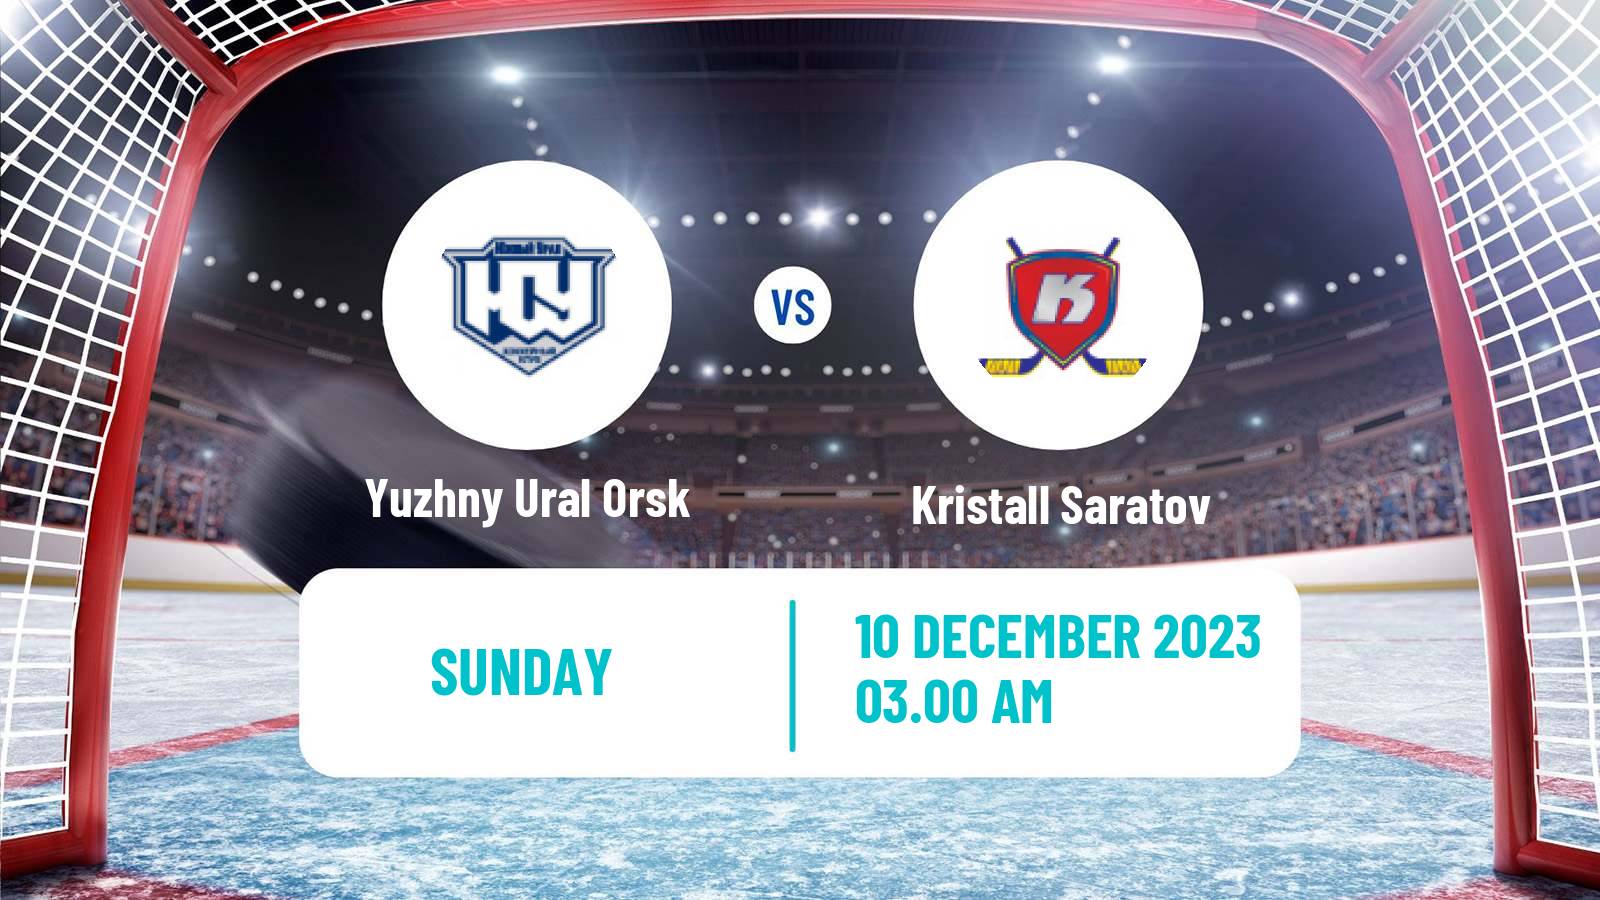 Hockey VHL Yuzhny Ural Orsk - Kristall Saratov